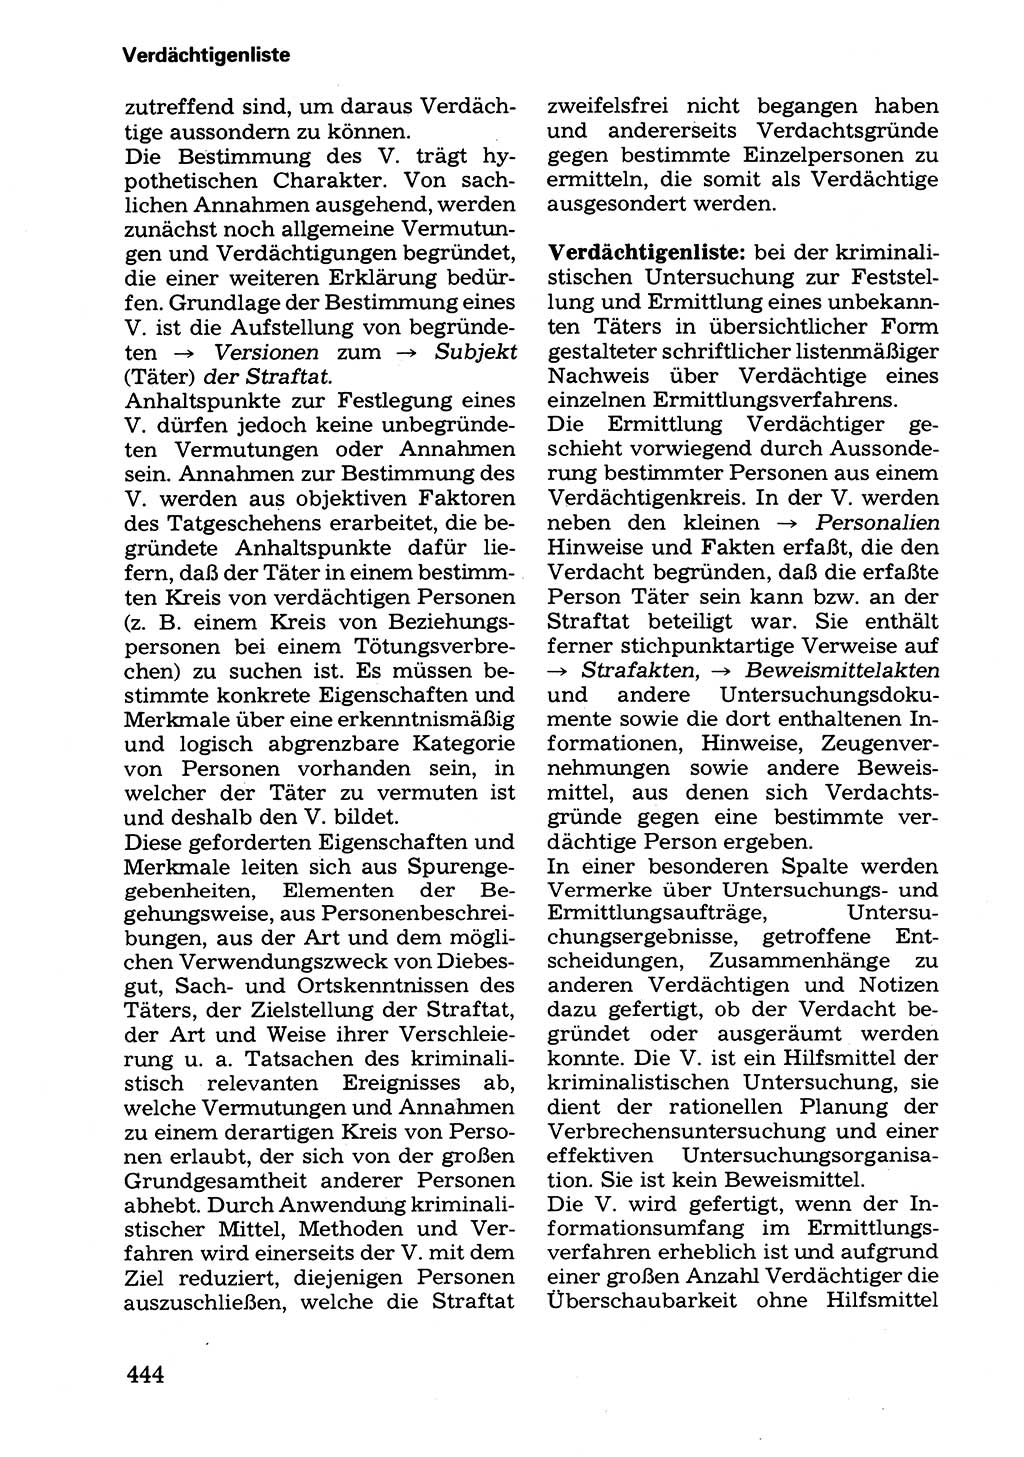 Wörterbuch der sozialistischen Kriminalistik [Deutsche Demokratische Republik (DDR)] 1981, Seite 444 (Wb. soz. Krim. DDR 1981, S. 444)